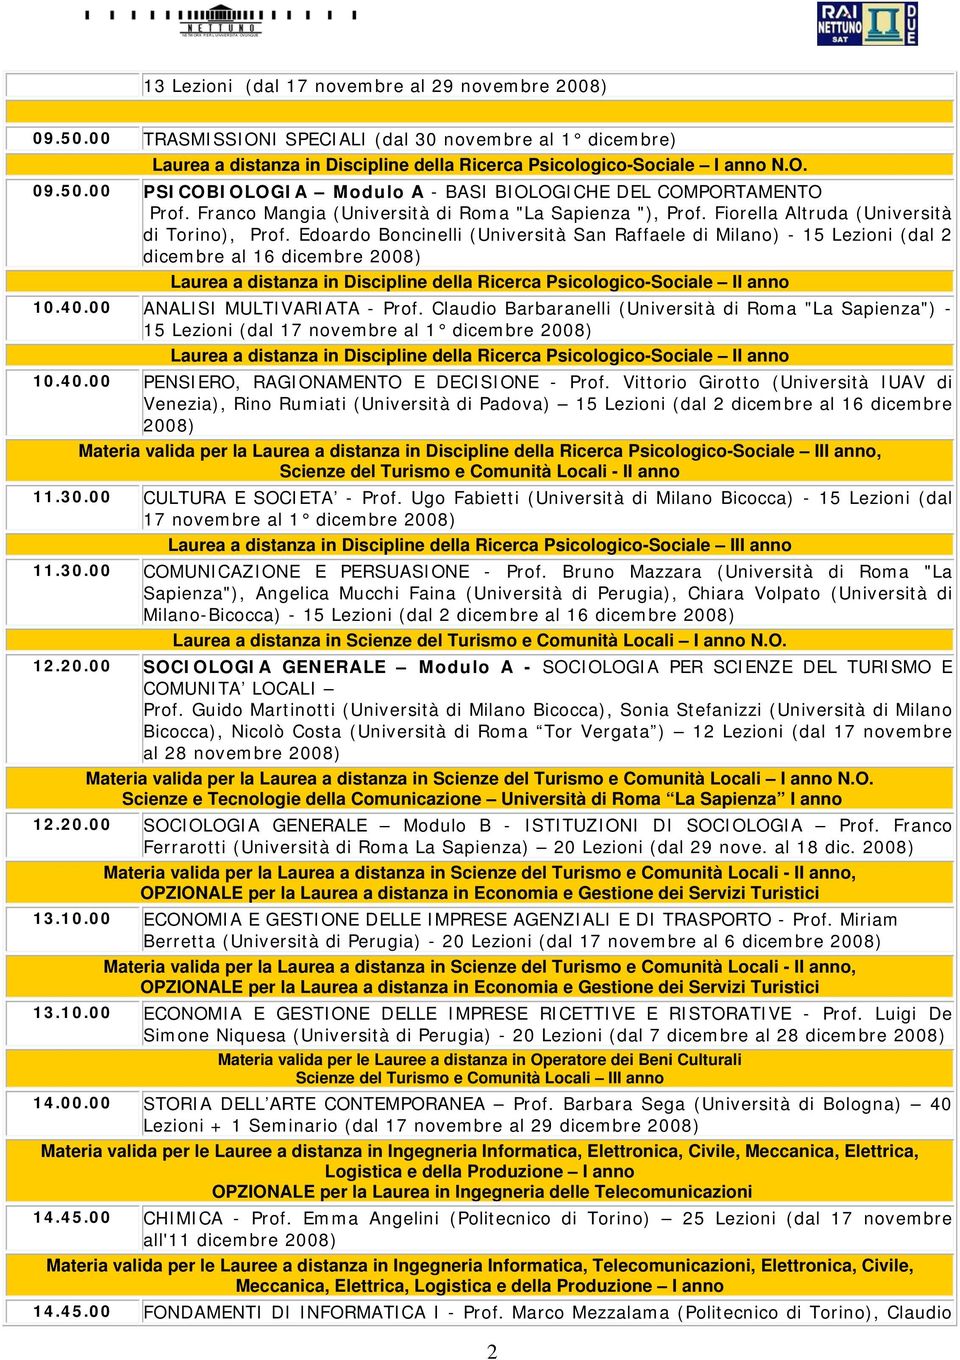 Edoardo Boncinelli (Università San Raffaele di Milano) - 15 Lezioni (dal 2 dicembre al 16 dicembre 2008) Laurea a distanza in Discipline della Ricerca Psicologico-Sociale 10.40.